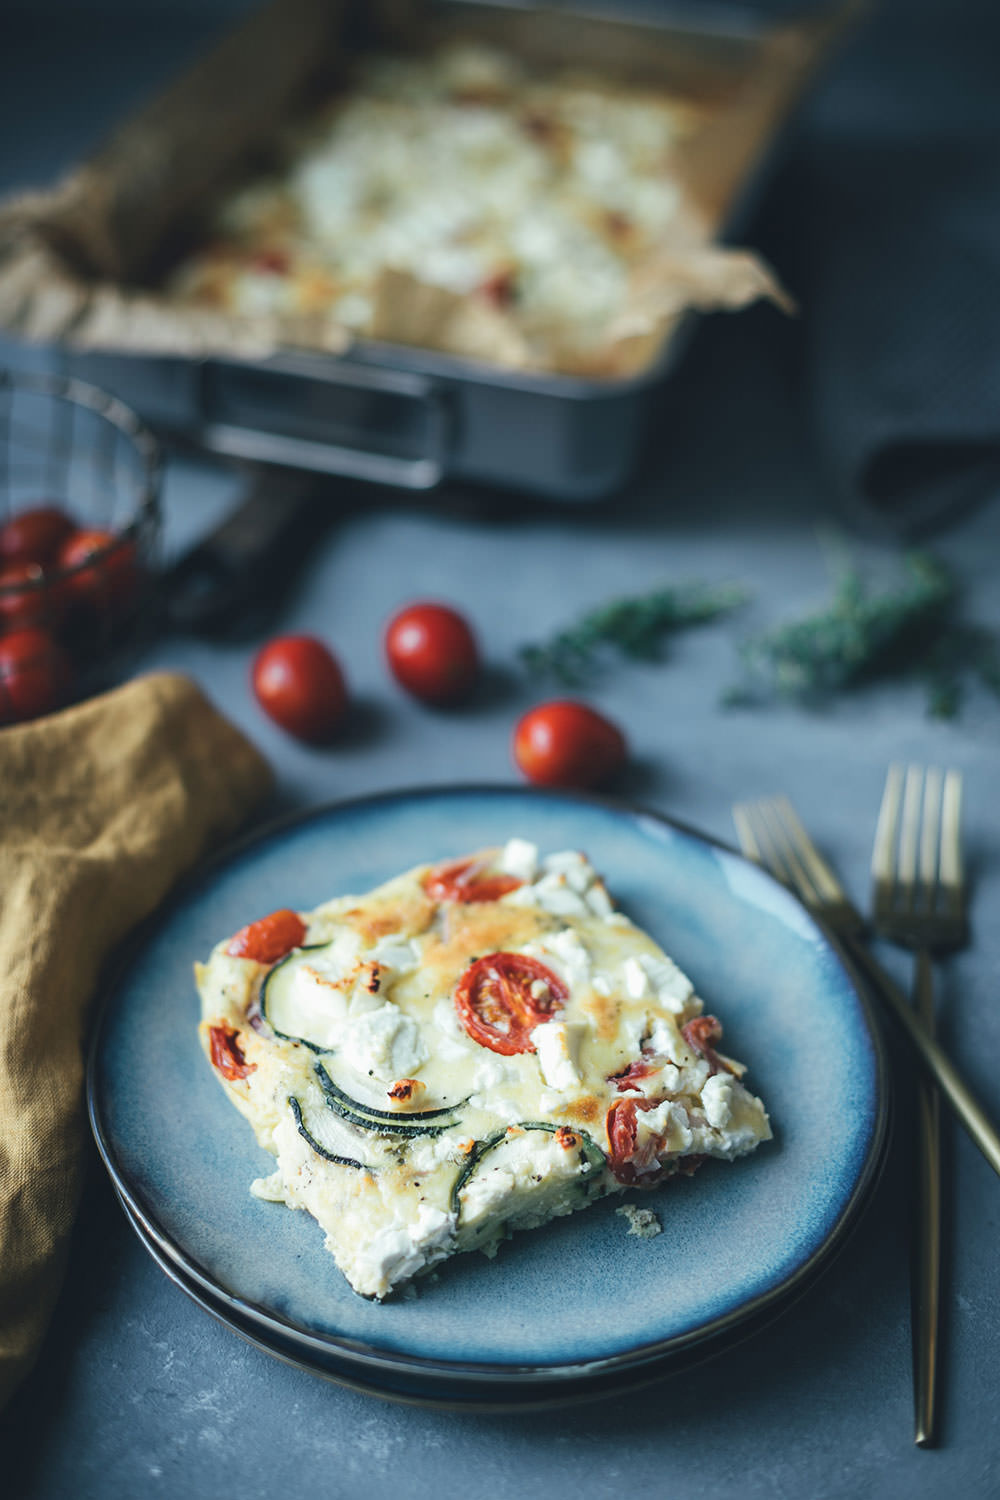 Rezept für Sommer-Frittata mit Zucchini, Tomaten und Feta | perfekt für die schnelle Feierabendküche im Sommer | moeyskitchen.com #frittata #omelette #quiche #sommerrezept #rezept #kochen #lowcarb #lunch #dinner #mealprep